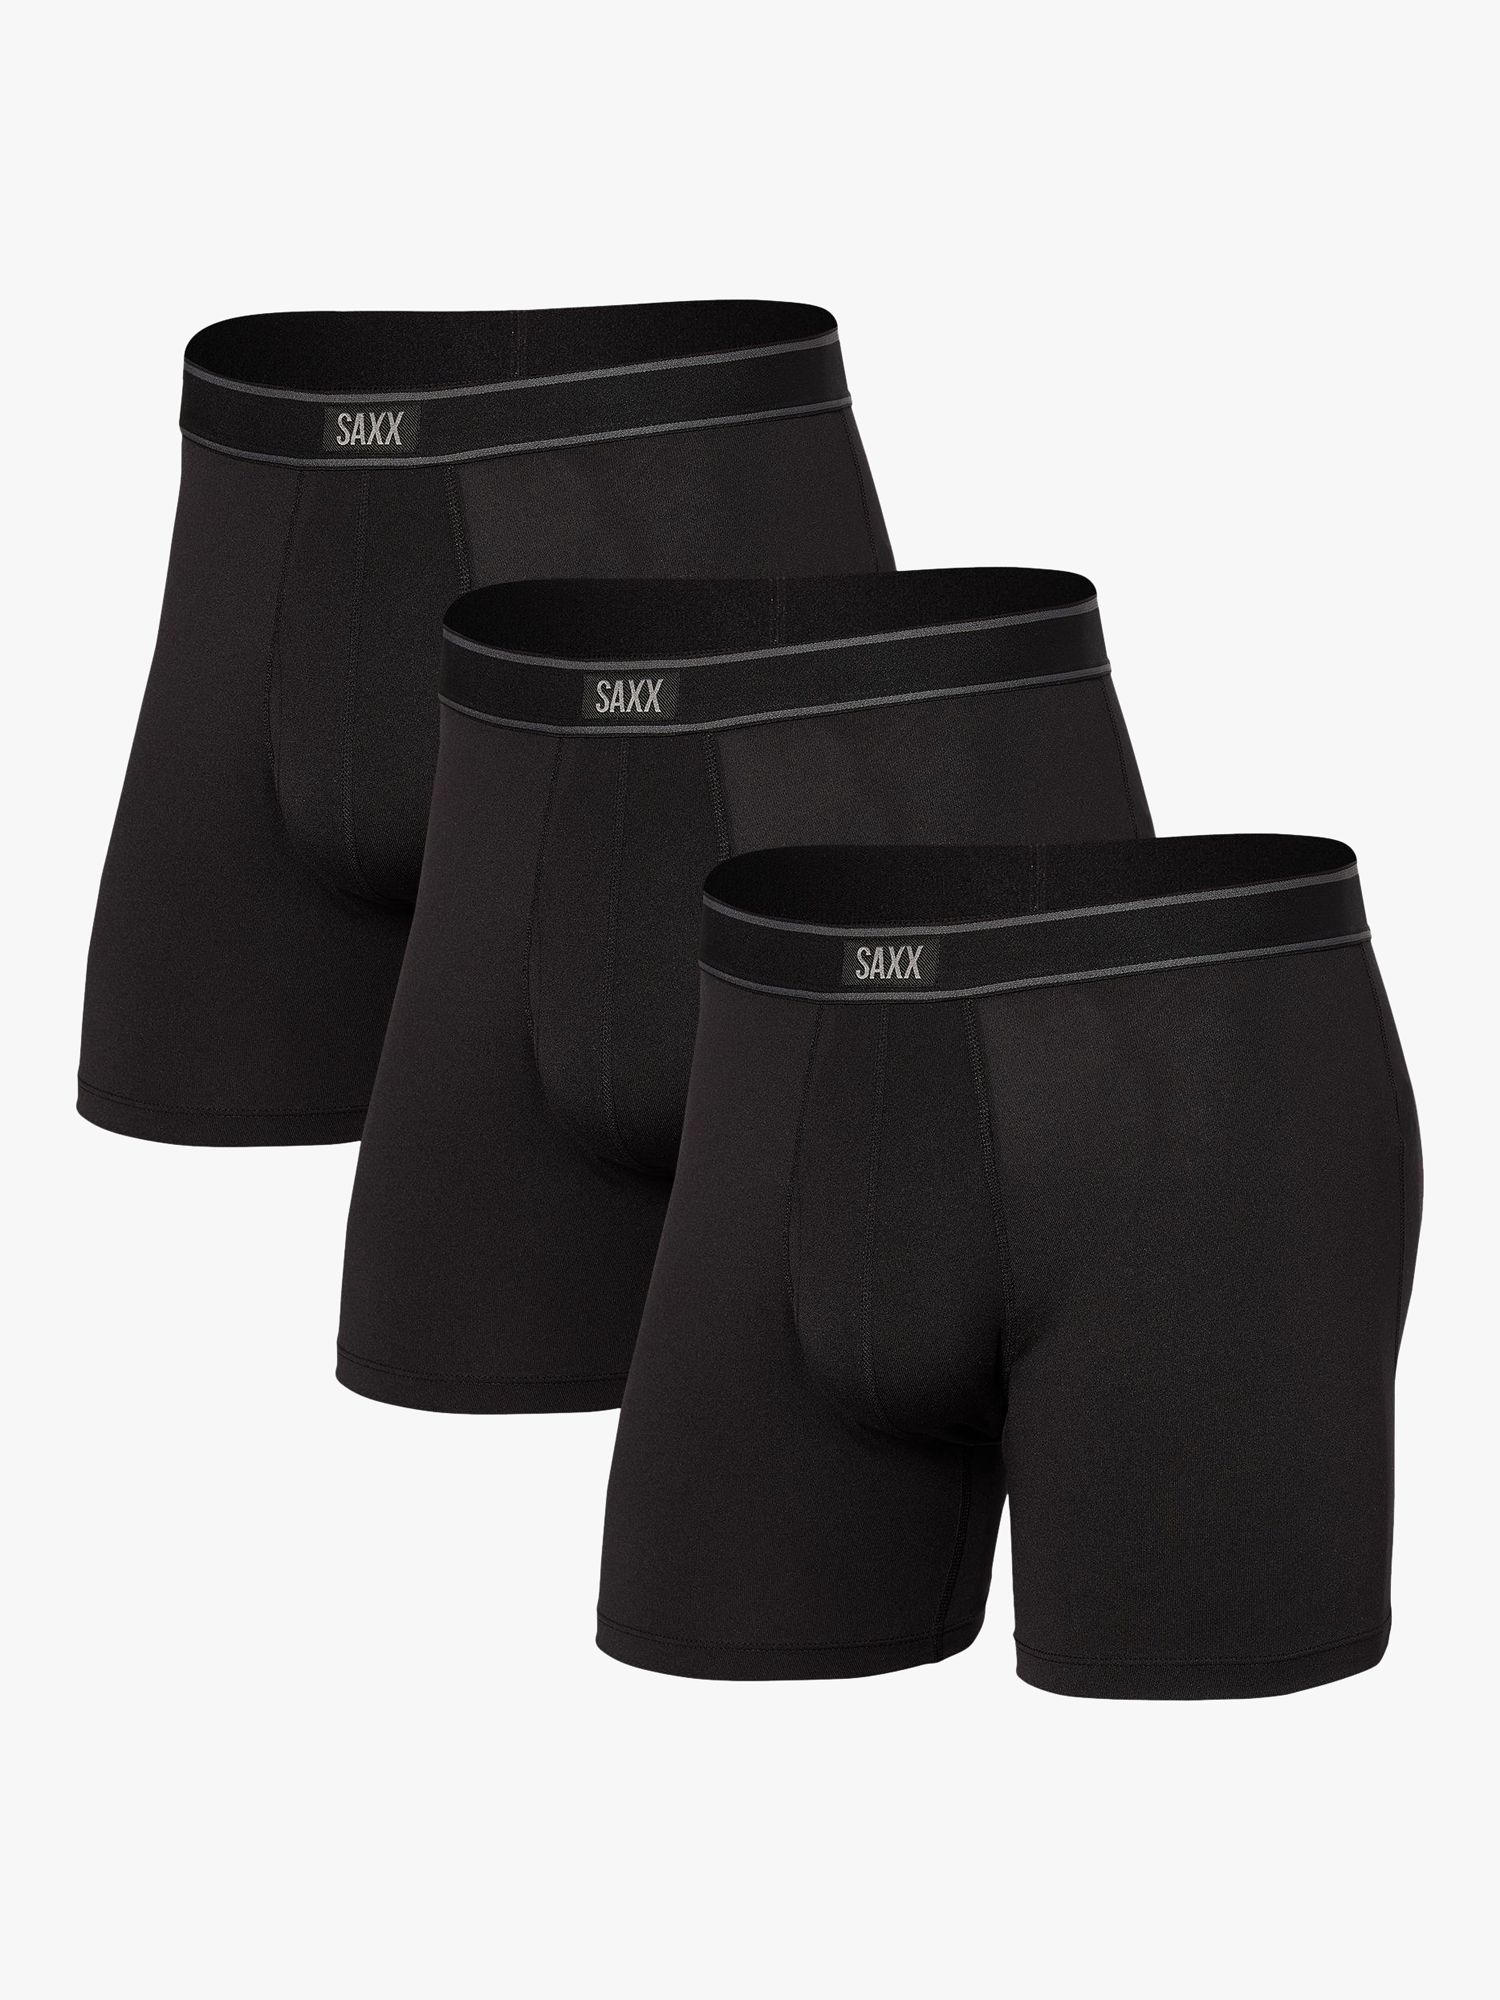 Saxx Underwear Daytripper 2 Pack Men's Fly Boxer Shorts